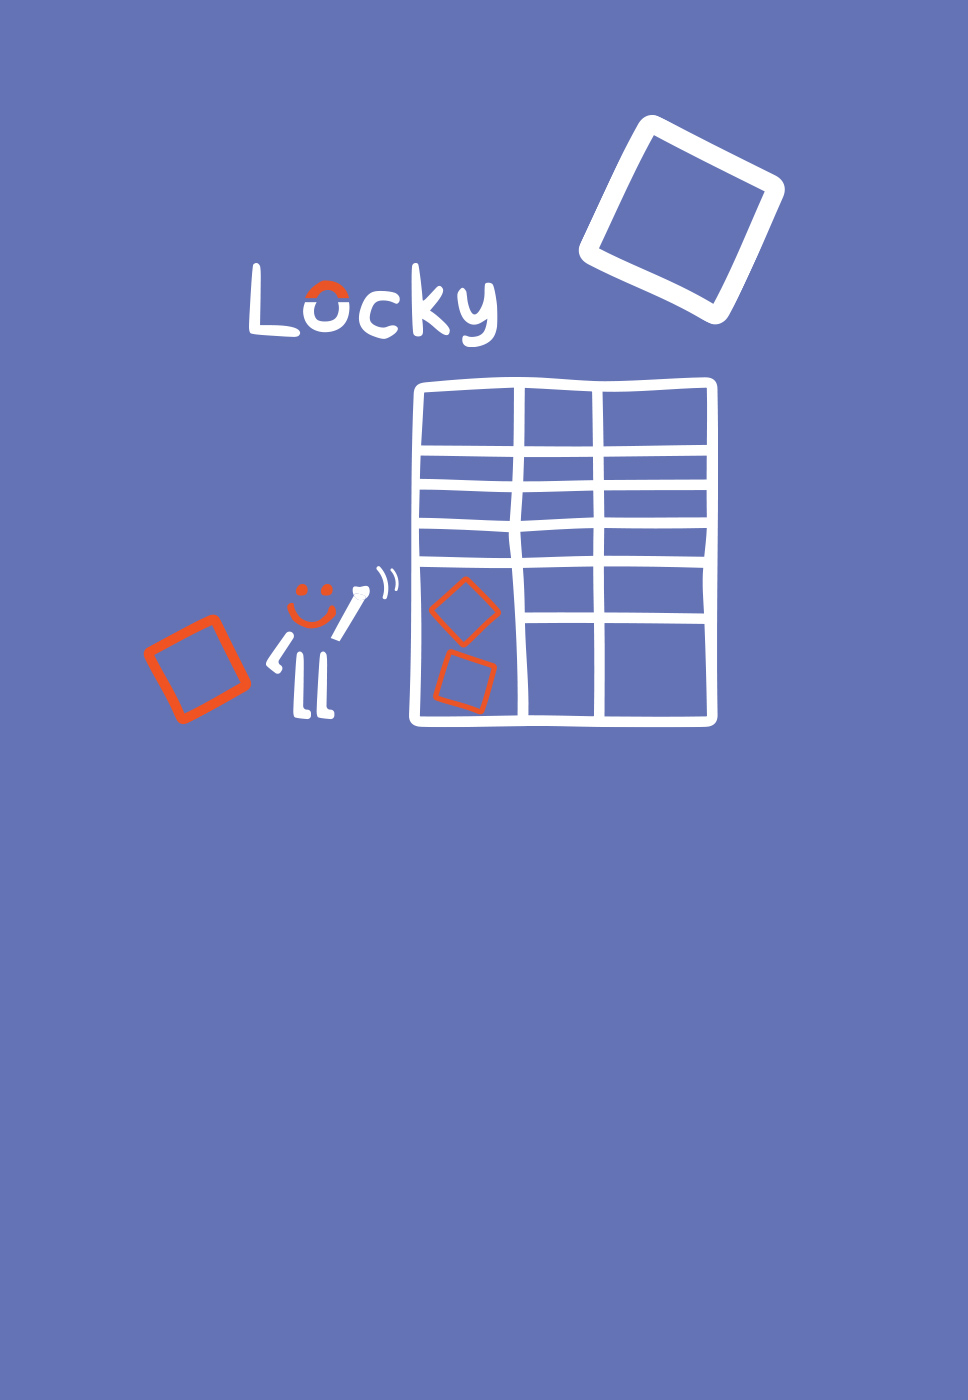 Ilustração de um cacifo e logótipo da Locky